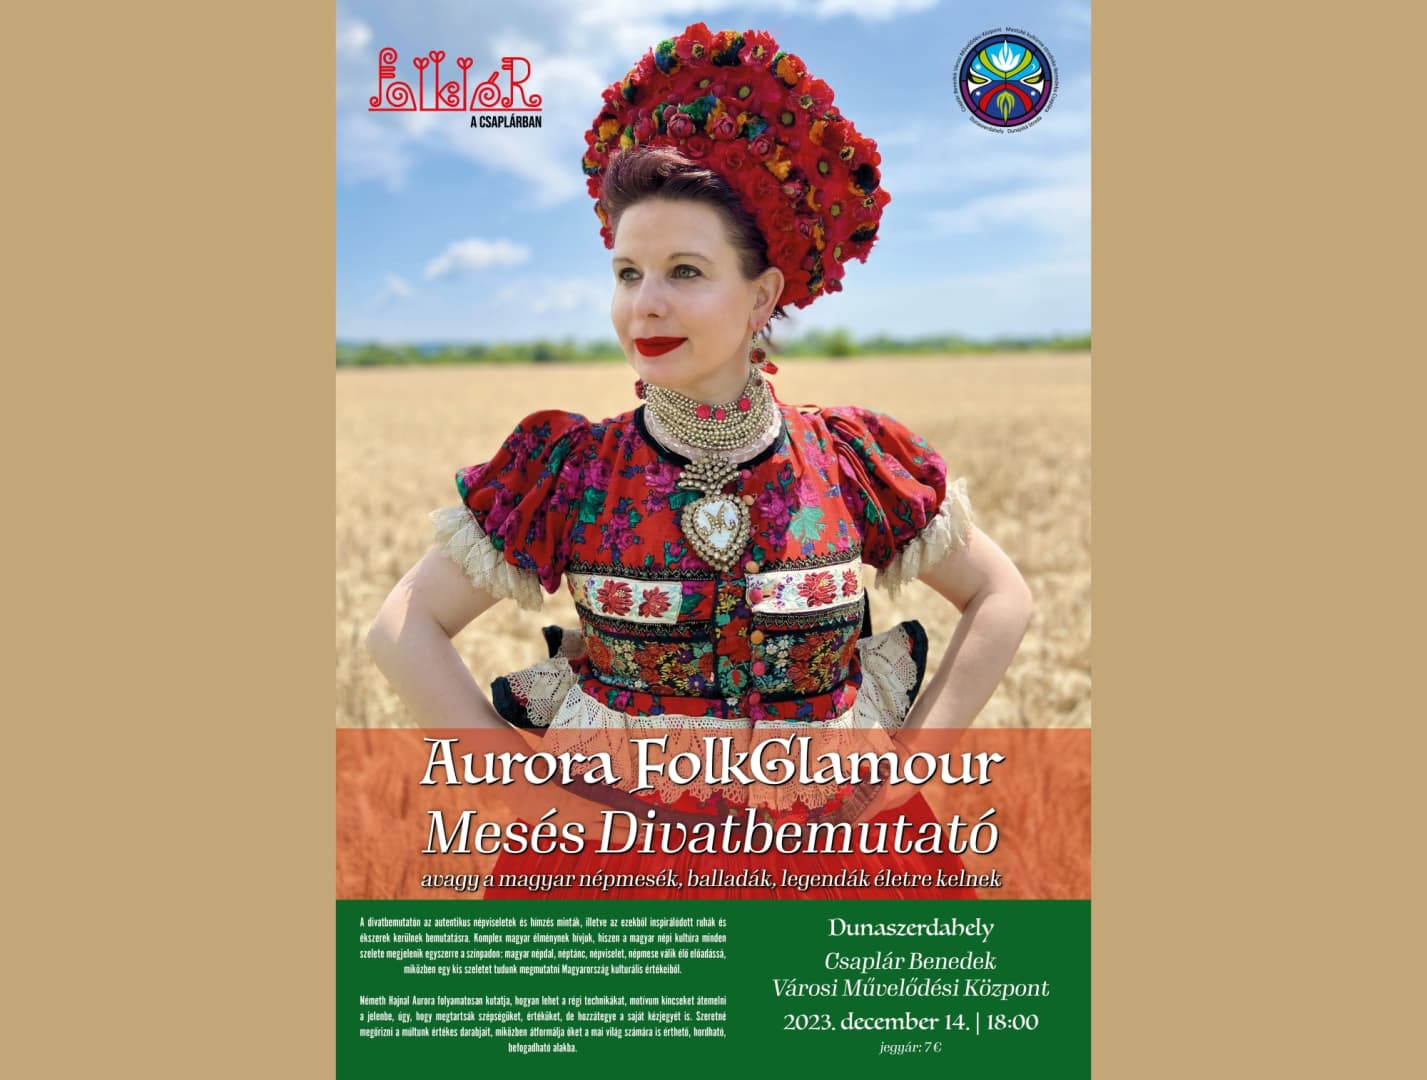 Aurora FolkGlamour, avagy egy mesés divatbemutató, ahol a magyar népmesék, balladák, legendák életre kelnek!